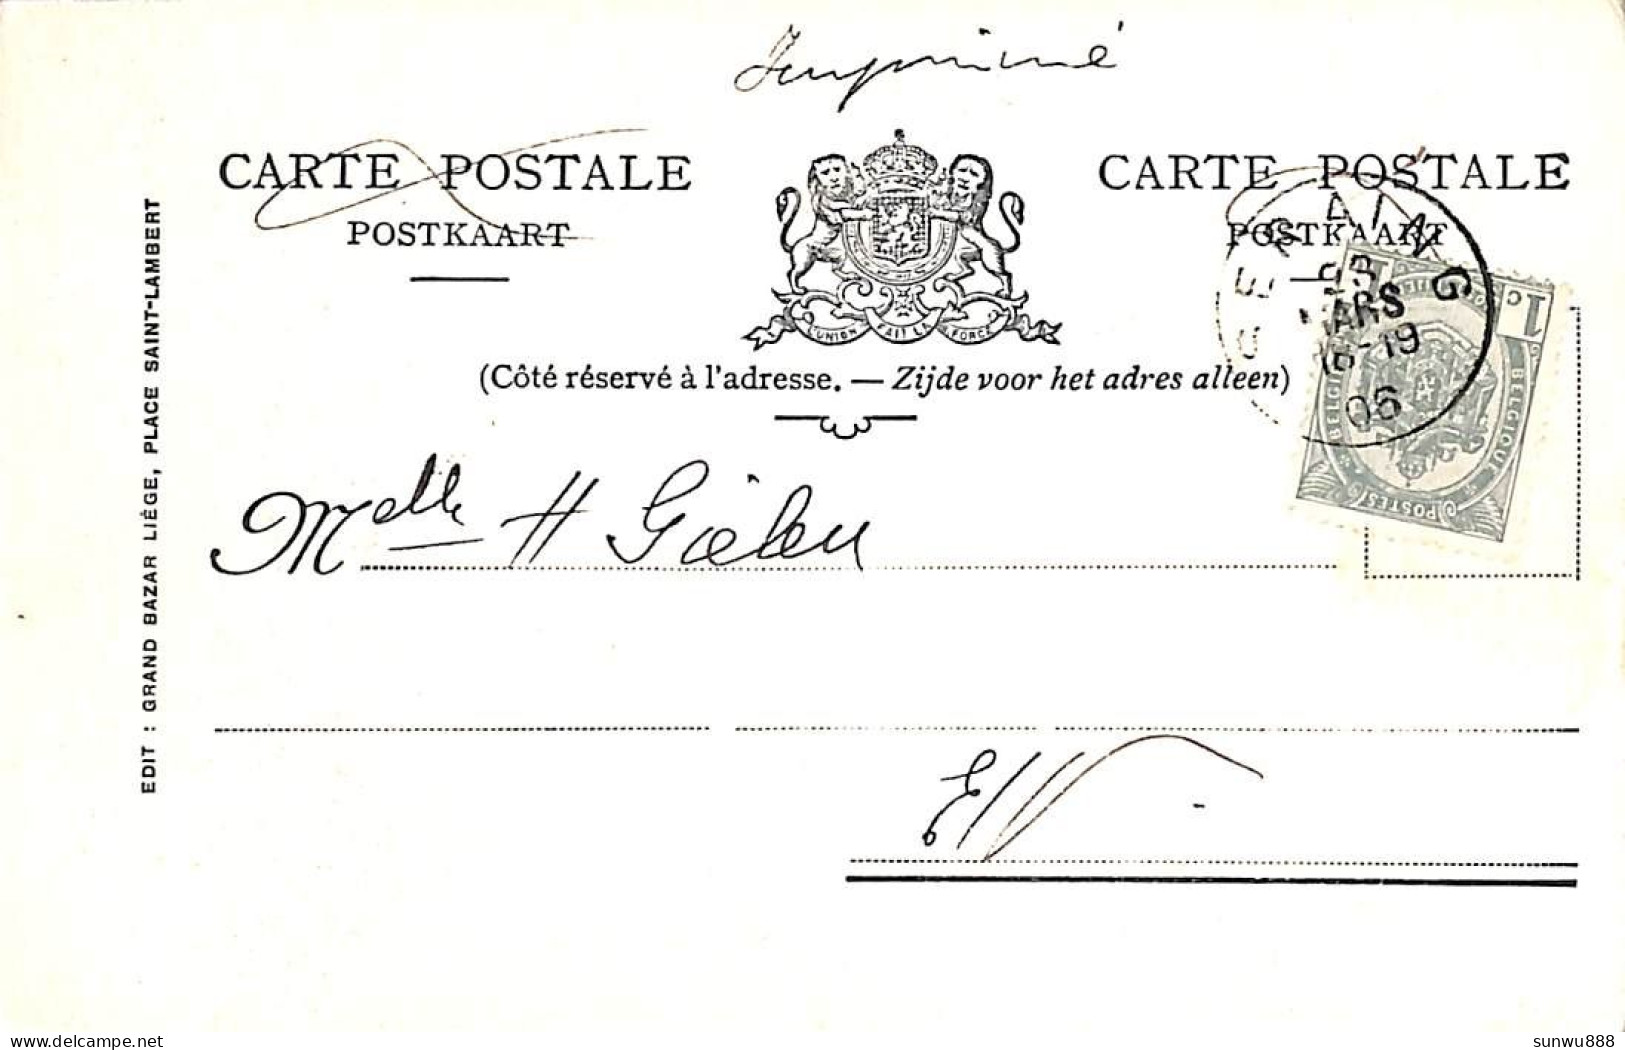 Tilff - Vue Générale (Edit. Grand Bazar Liege 1906) - Esneux